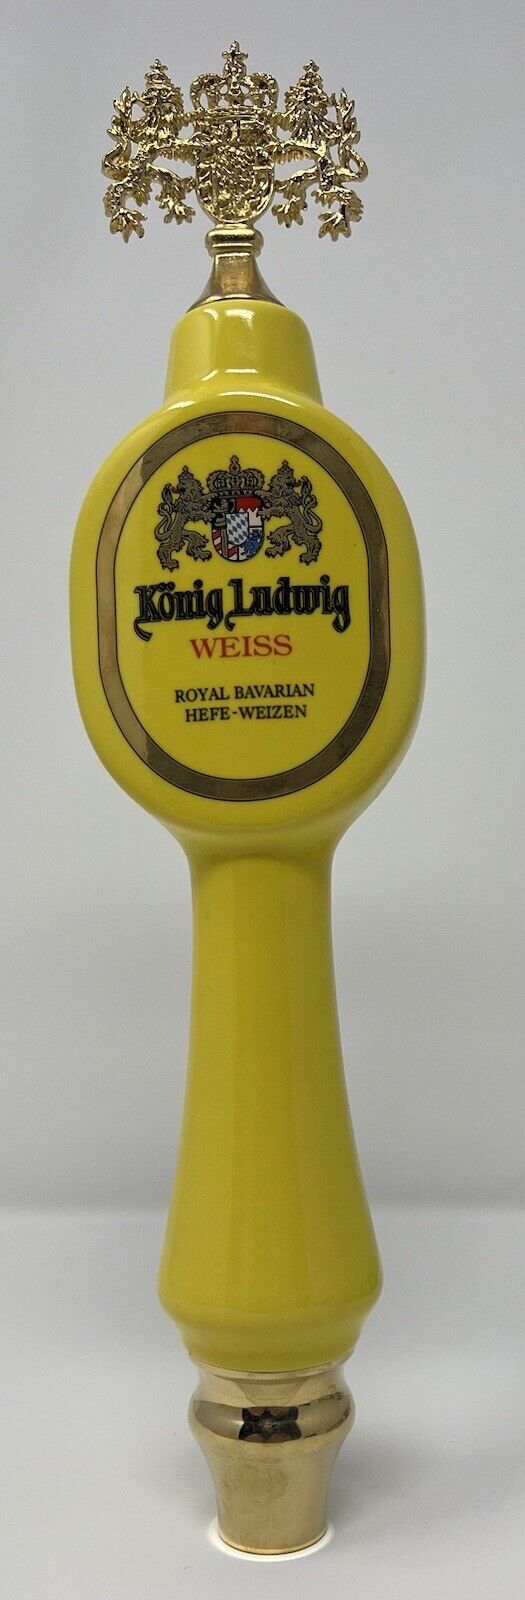 König Ludwig Weiss German 12”Beer Tap Handle - New